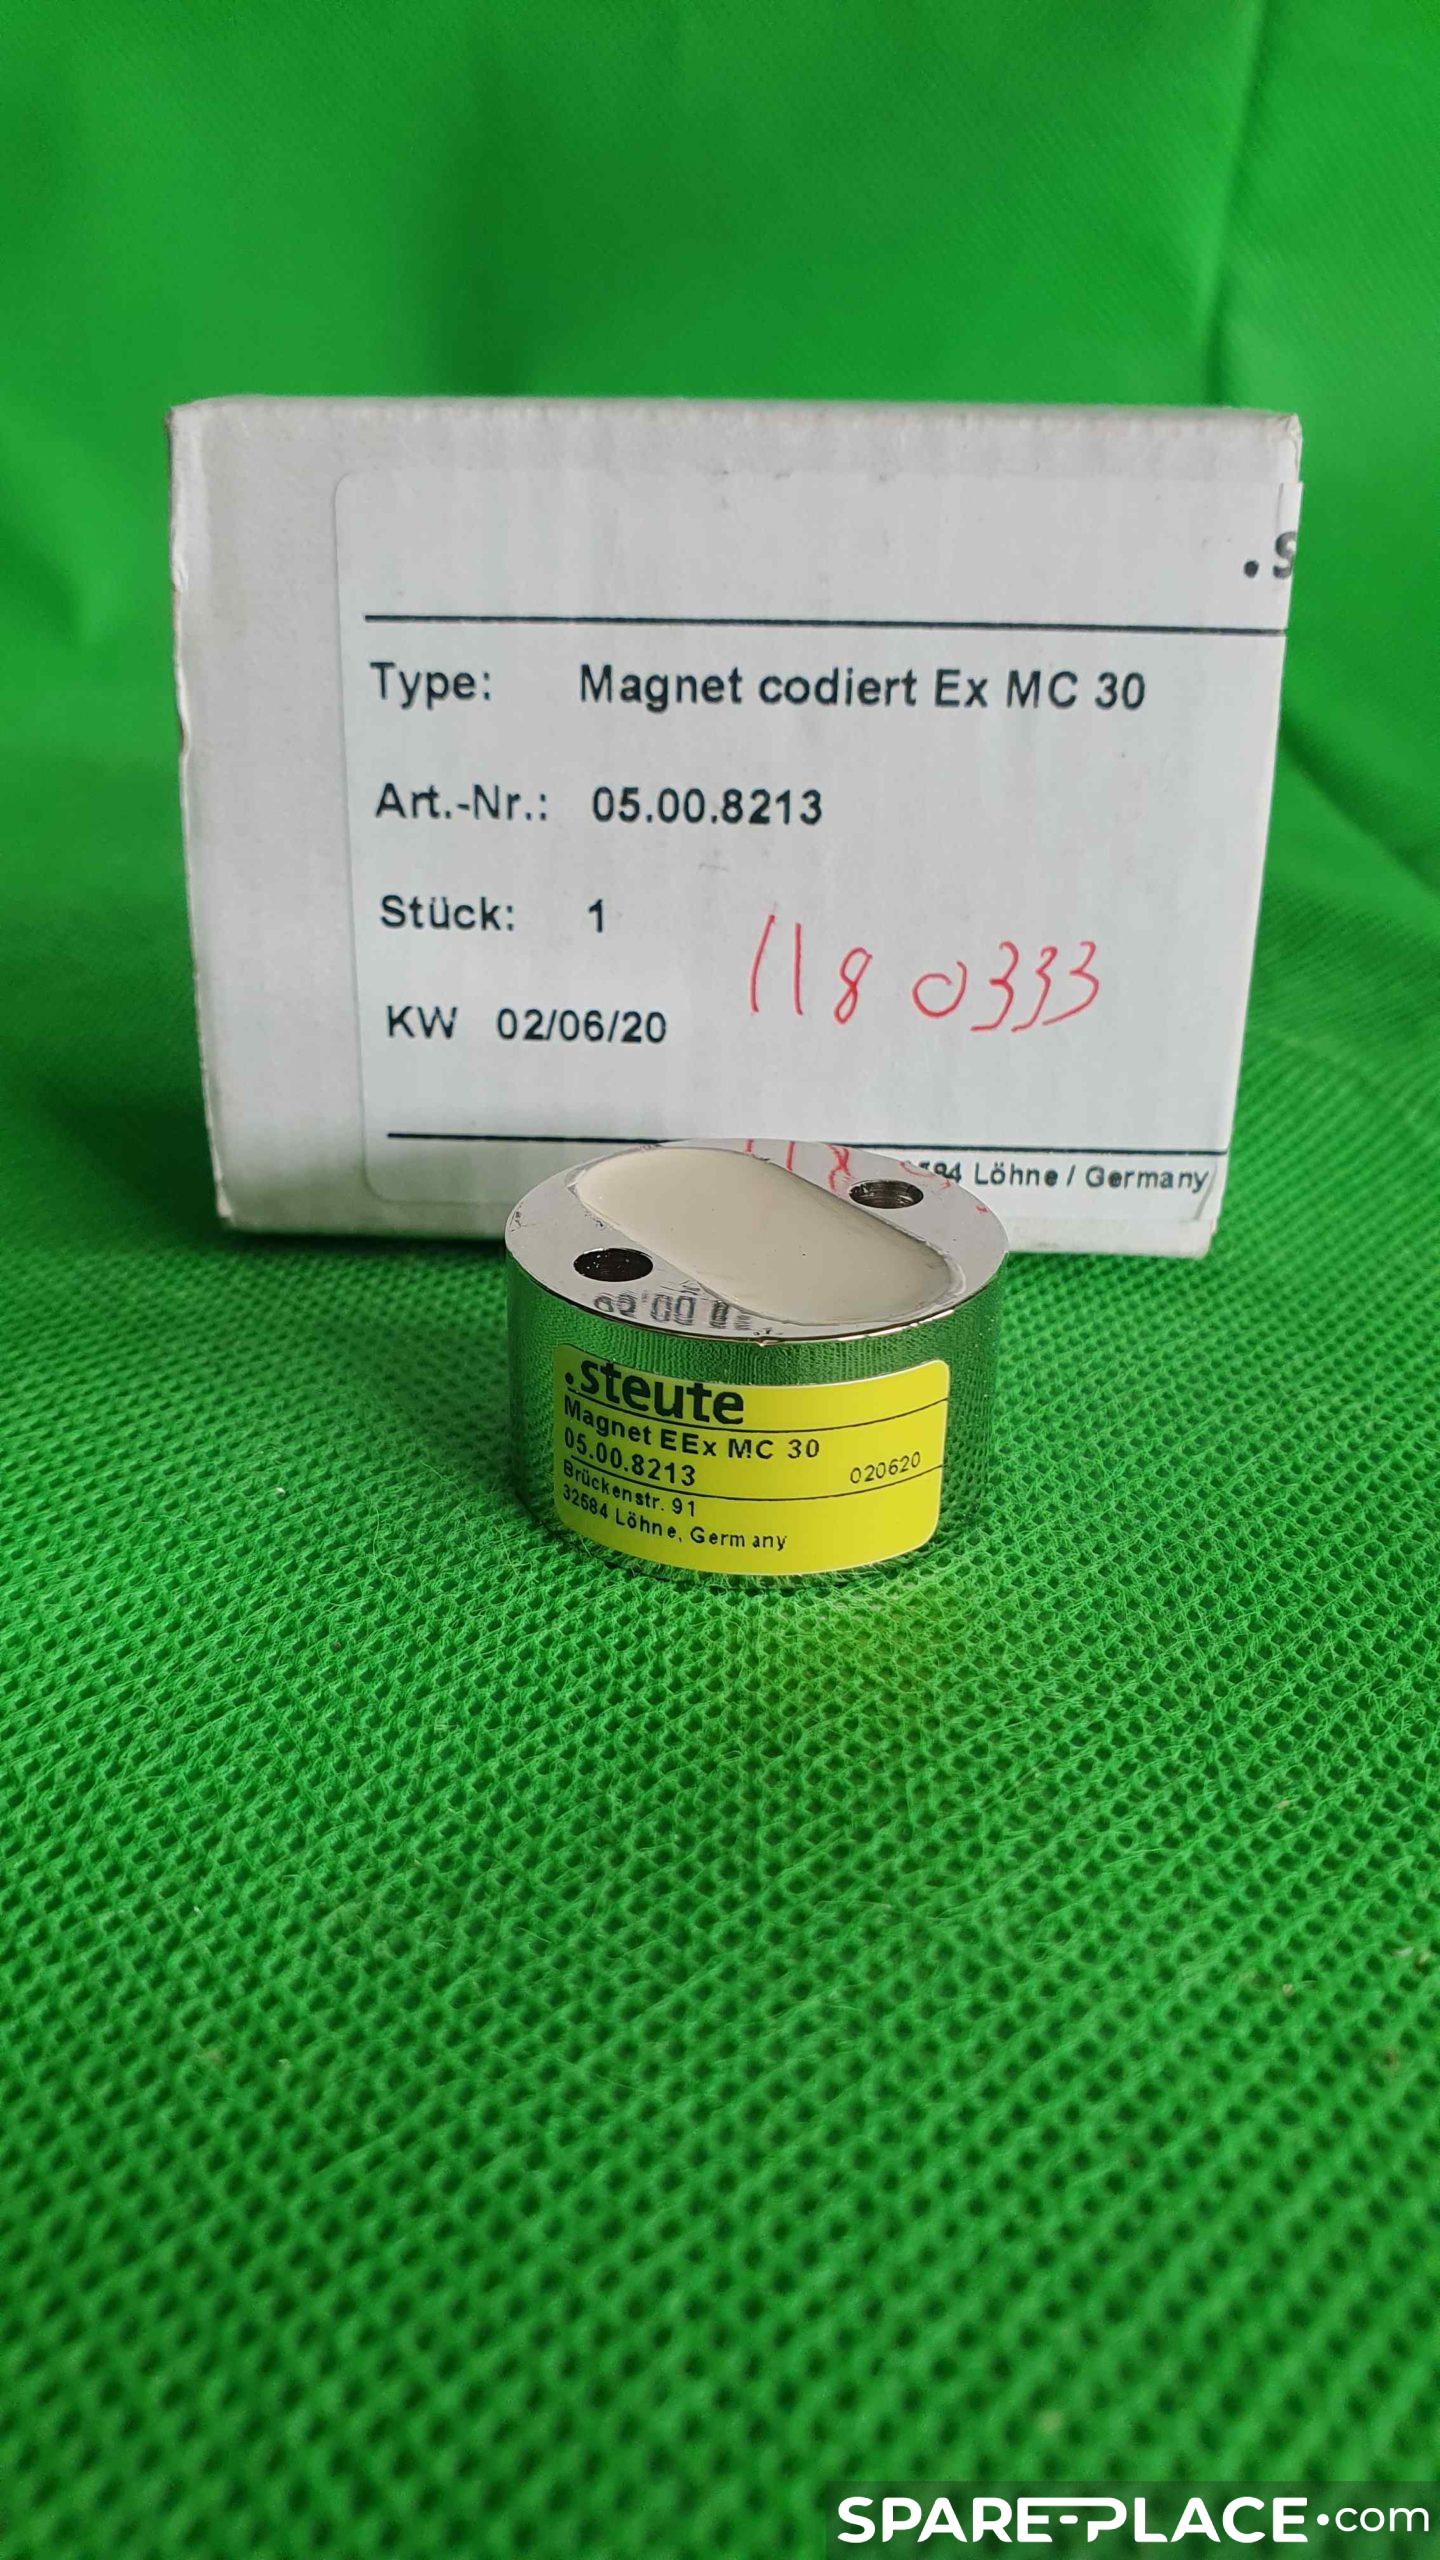 Référence Magnet Codiert Ex MC 30 de la marque Steute